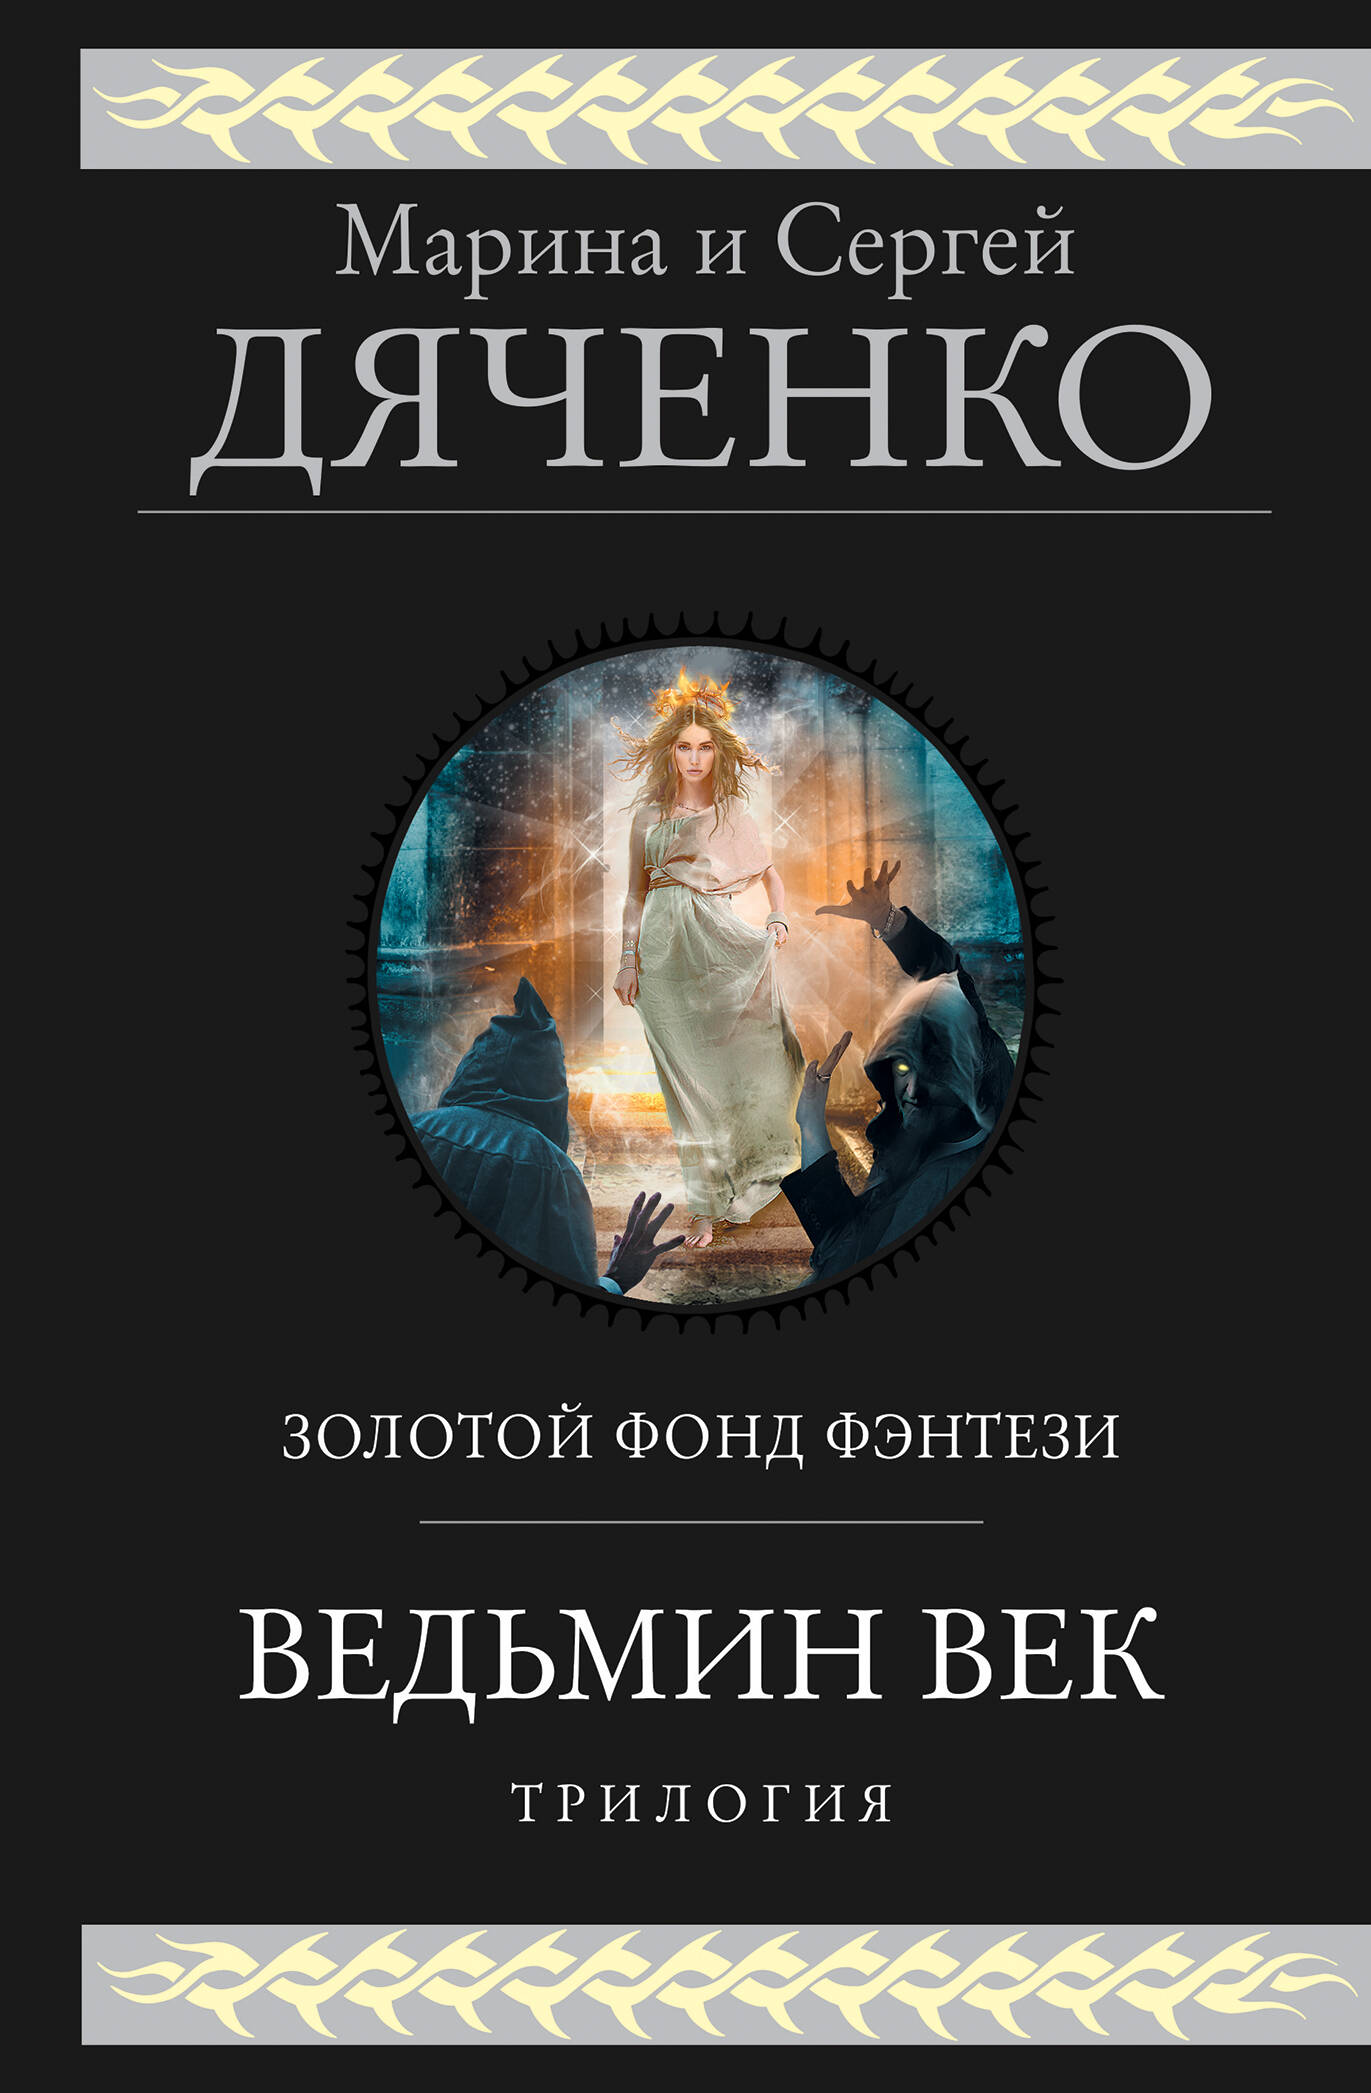 мэри и ведьмин цветок Дяченко Сергей Сергеевич Ведьмин век